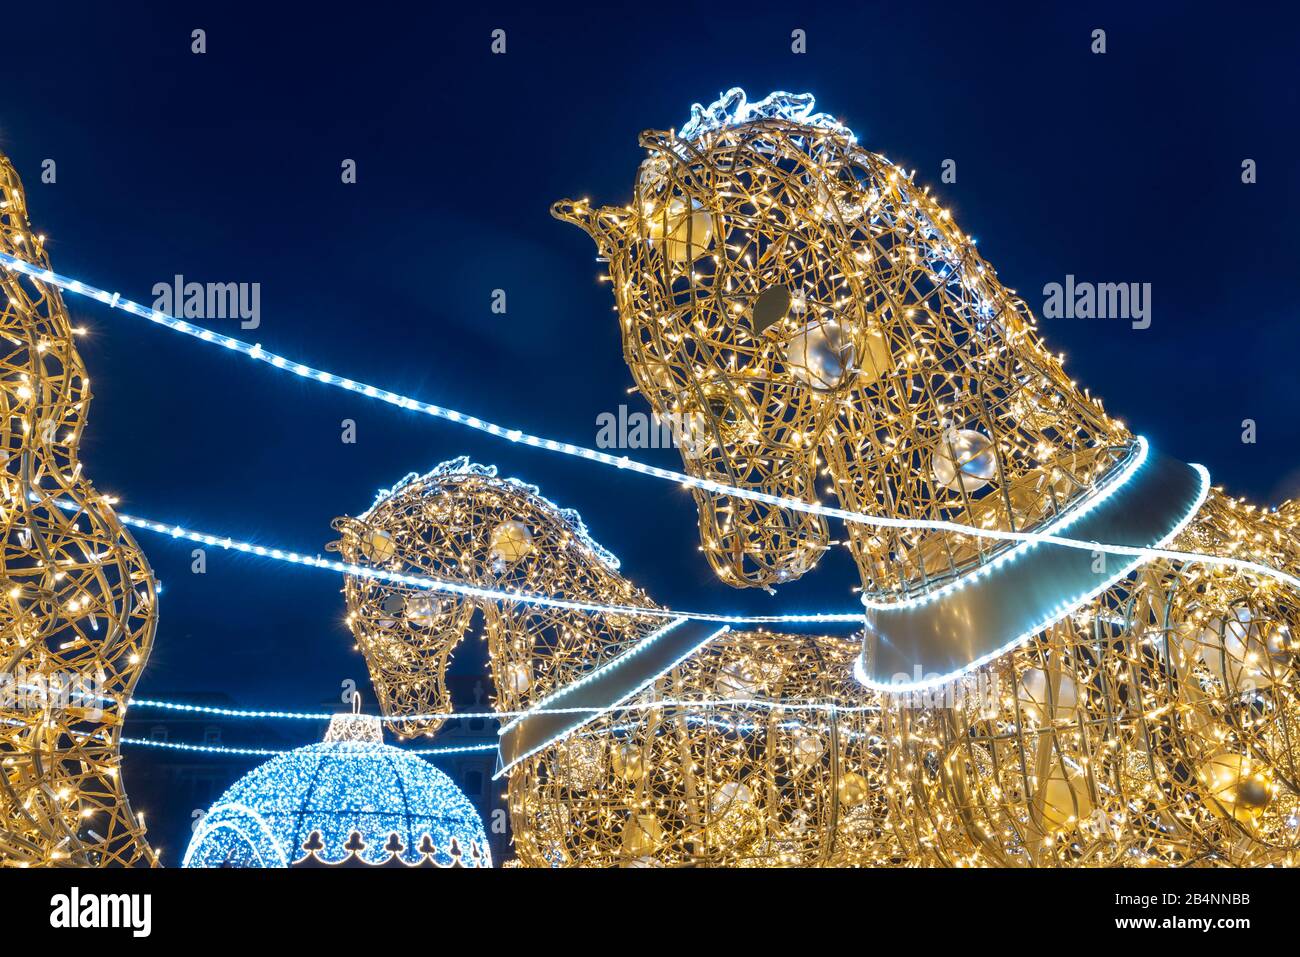 Deutschland, Sachsen-Anhalt, Magdeburg, beleuchtete Pferde stehen auf dem Domplatz, sie gehören zur Magdeburger Lichterwelt, auf der weihnachtliche Li Stock Photo